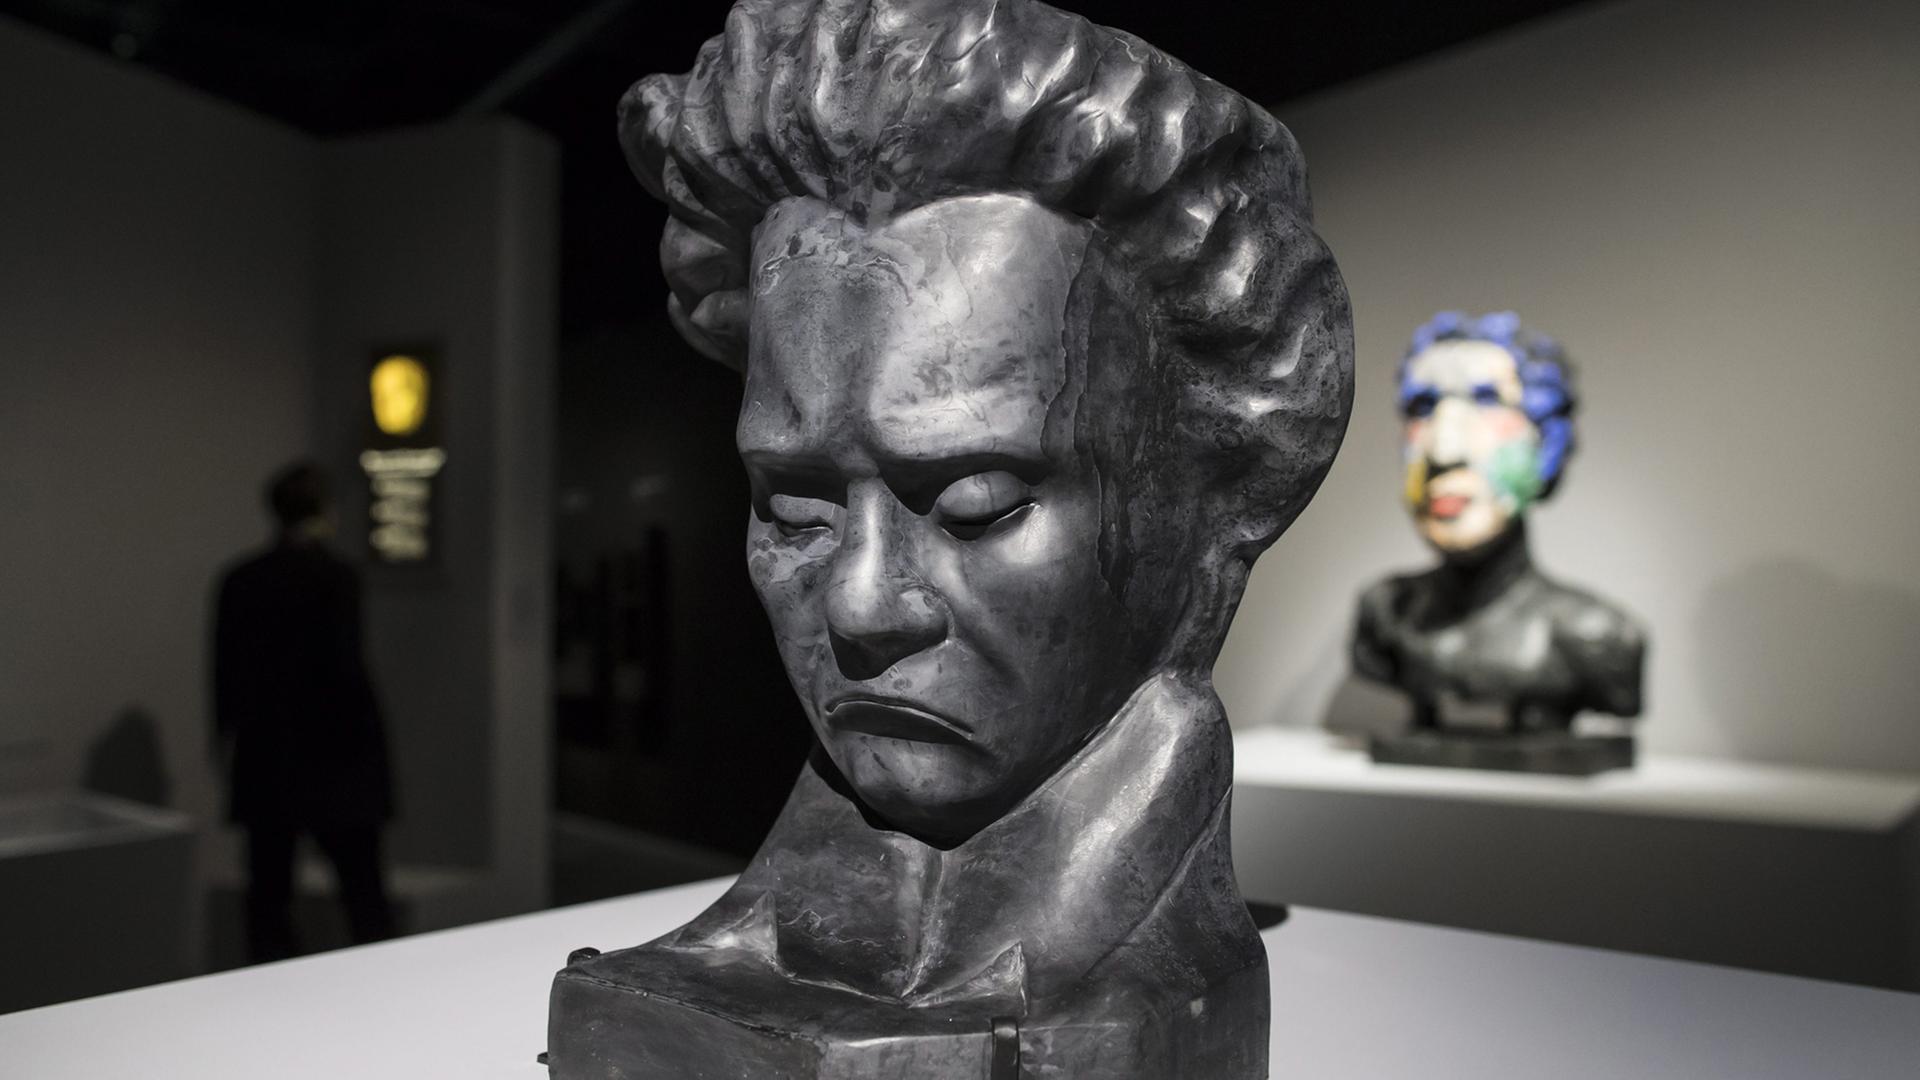 Skulpturen und Büsten von Beethoven in der Ausstellung "Ludwig Van" in der Philharmonie de Paris in Paris